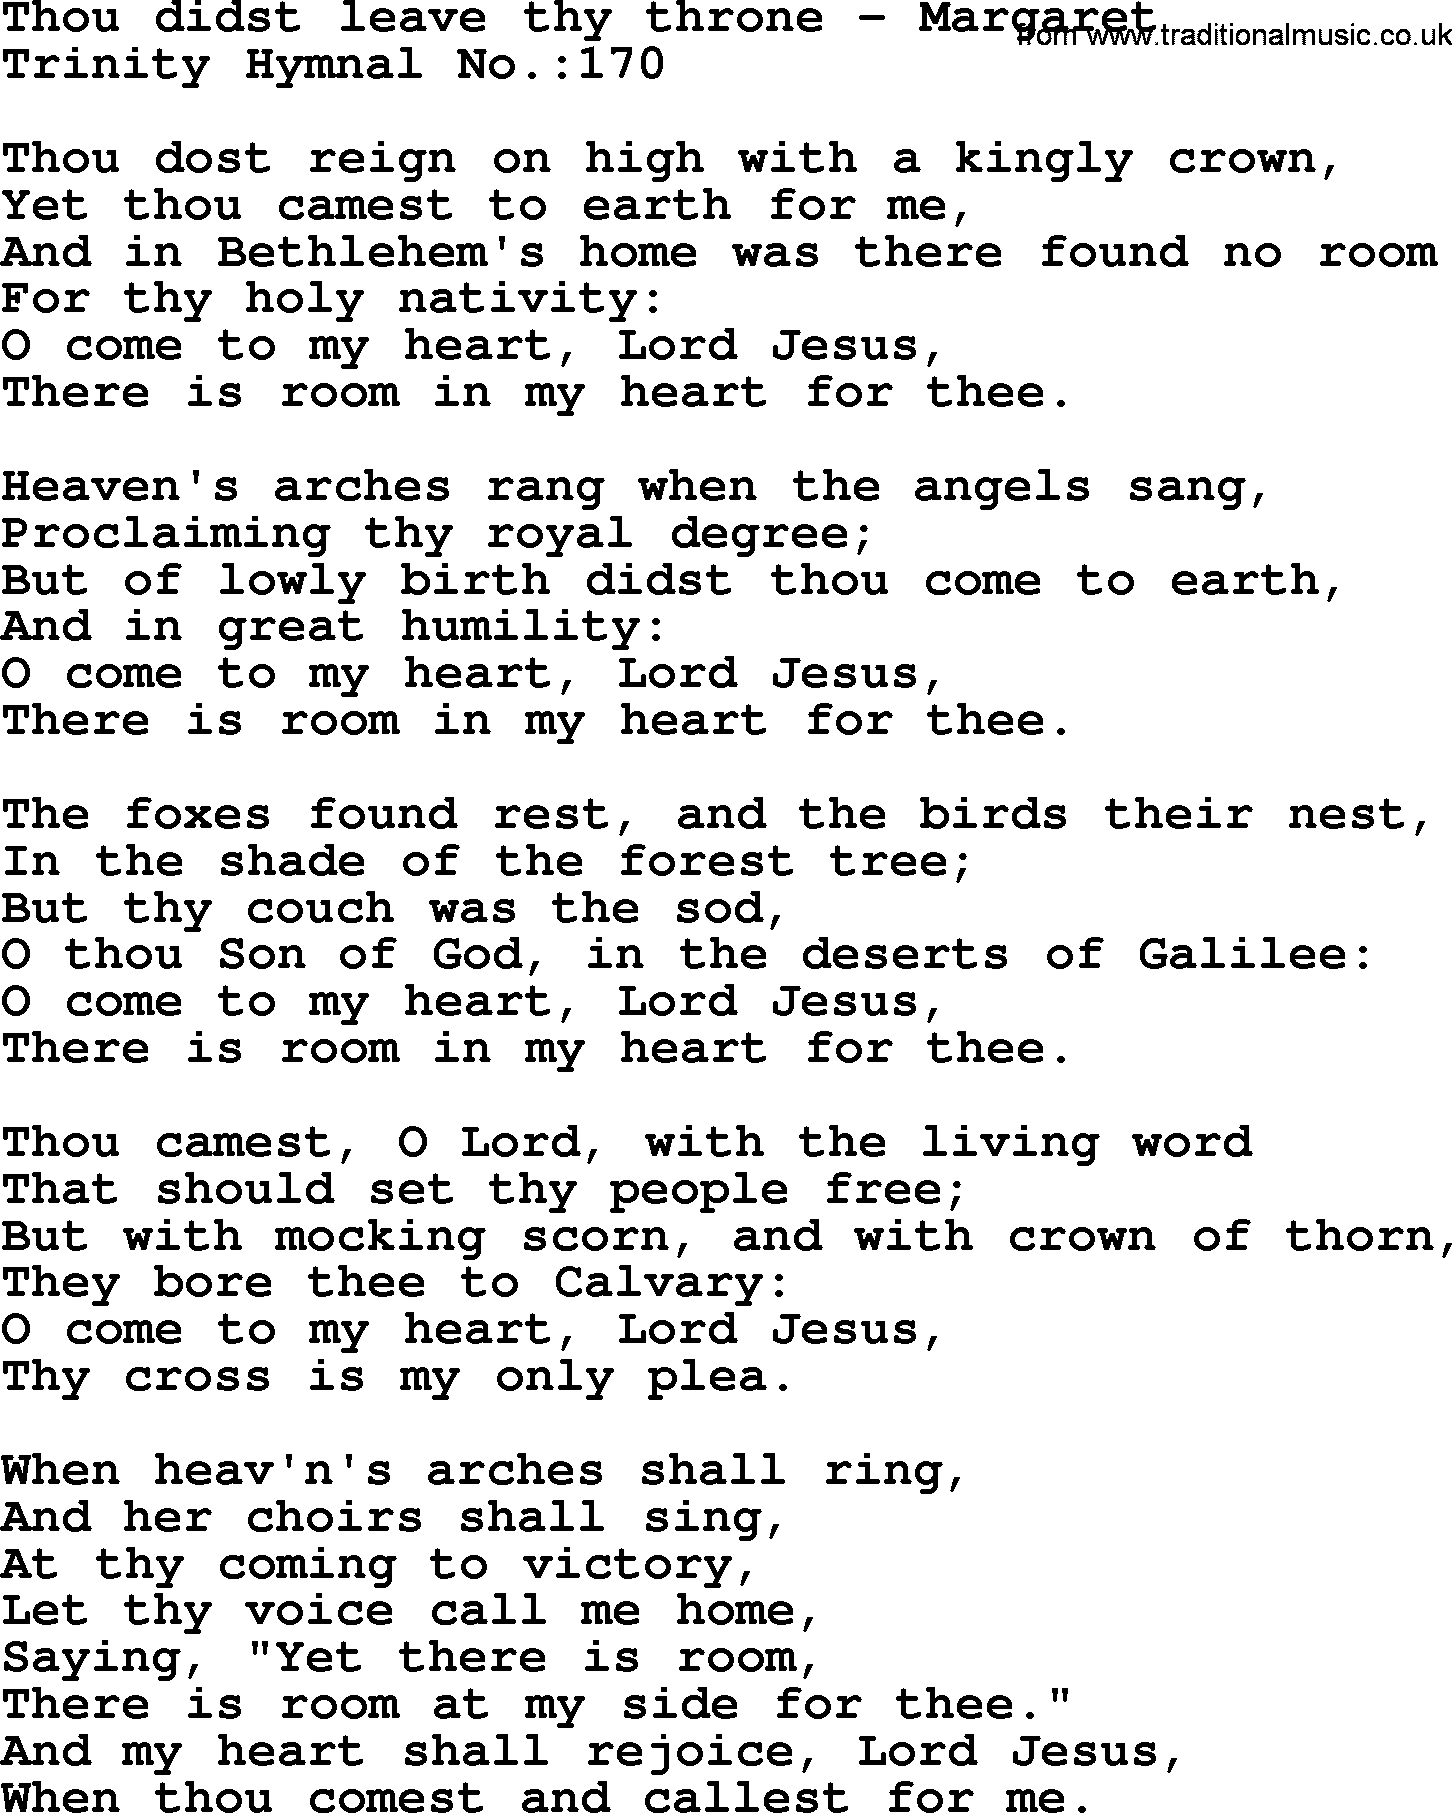 Trinity Hymnal Hymn: Thou Didst Leave Thy Throne--Margaret, lyrics with midi music